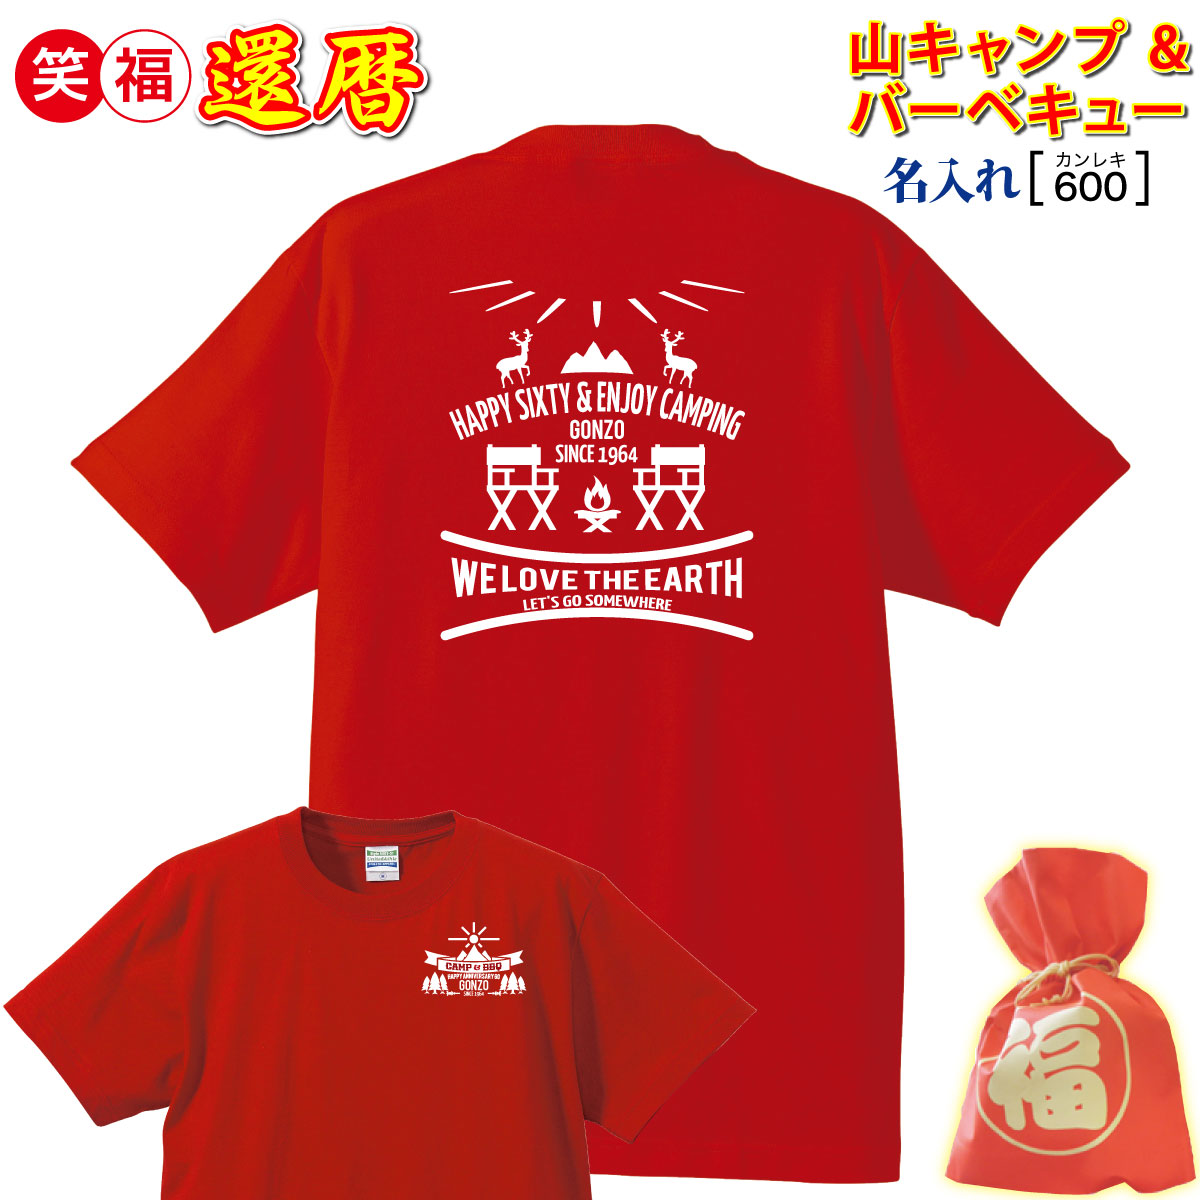 【楽天市場】還暦祝い プレゼント 父 母 男 女 友人 上司/赤色 tシャツ